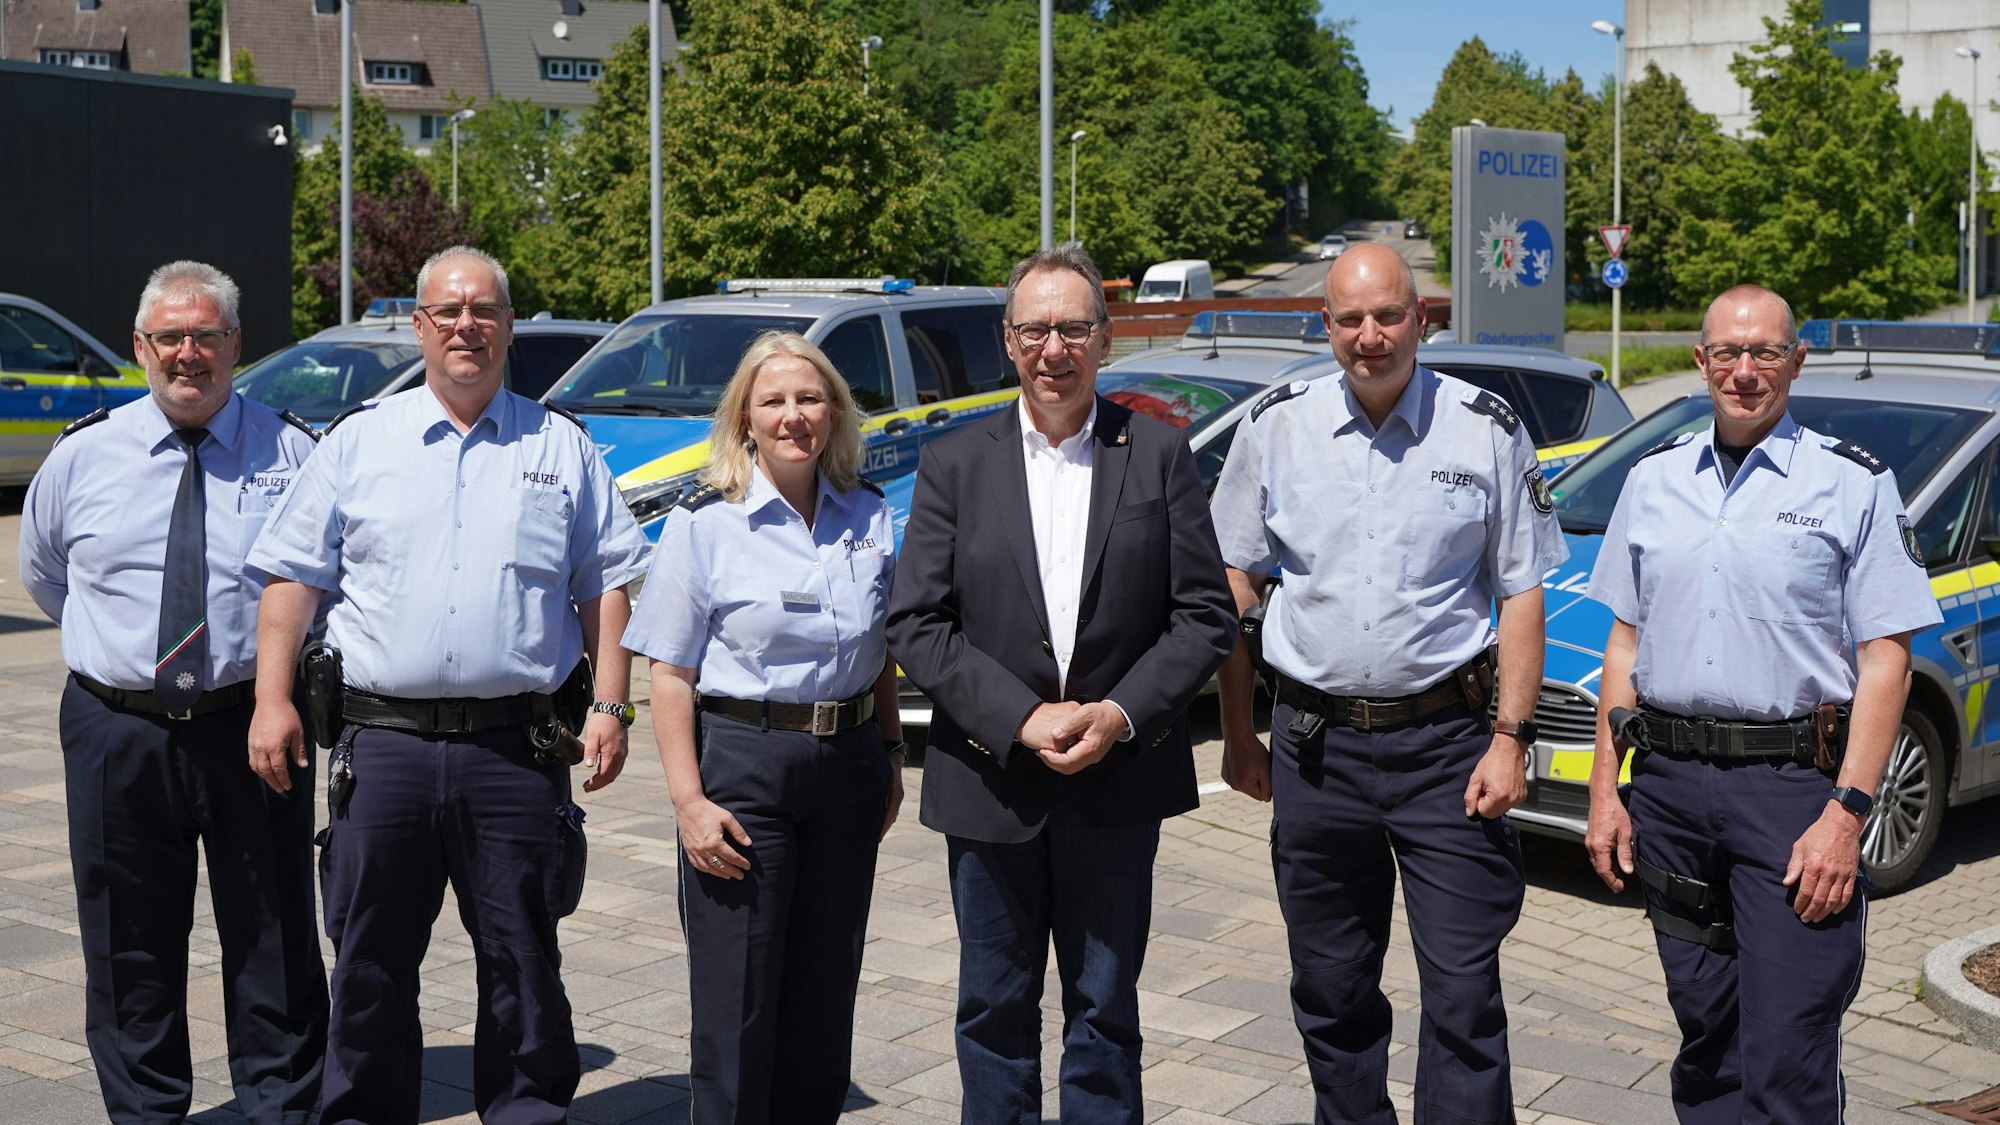 Oberbergs Landrat Jochen Hagt steht mit mehreren Polizisten in einer Reihe.